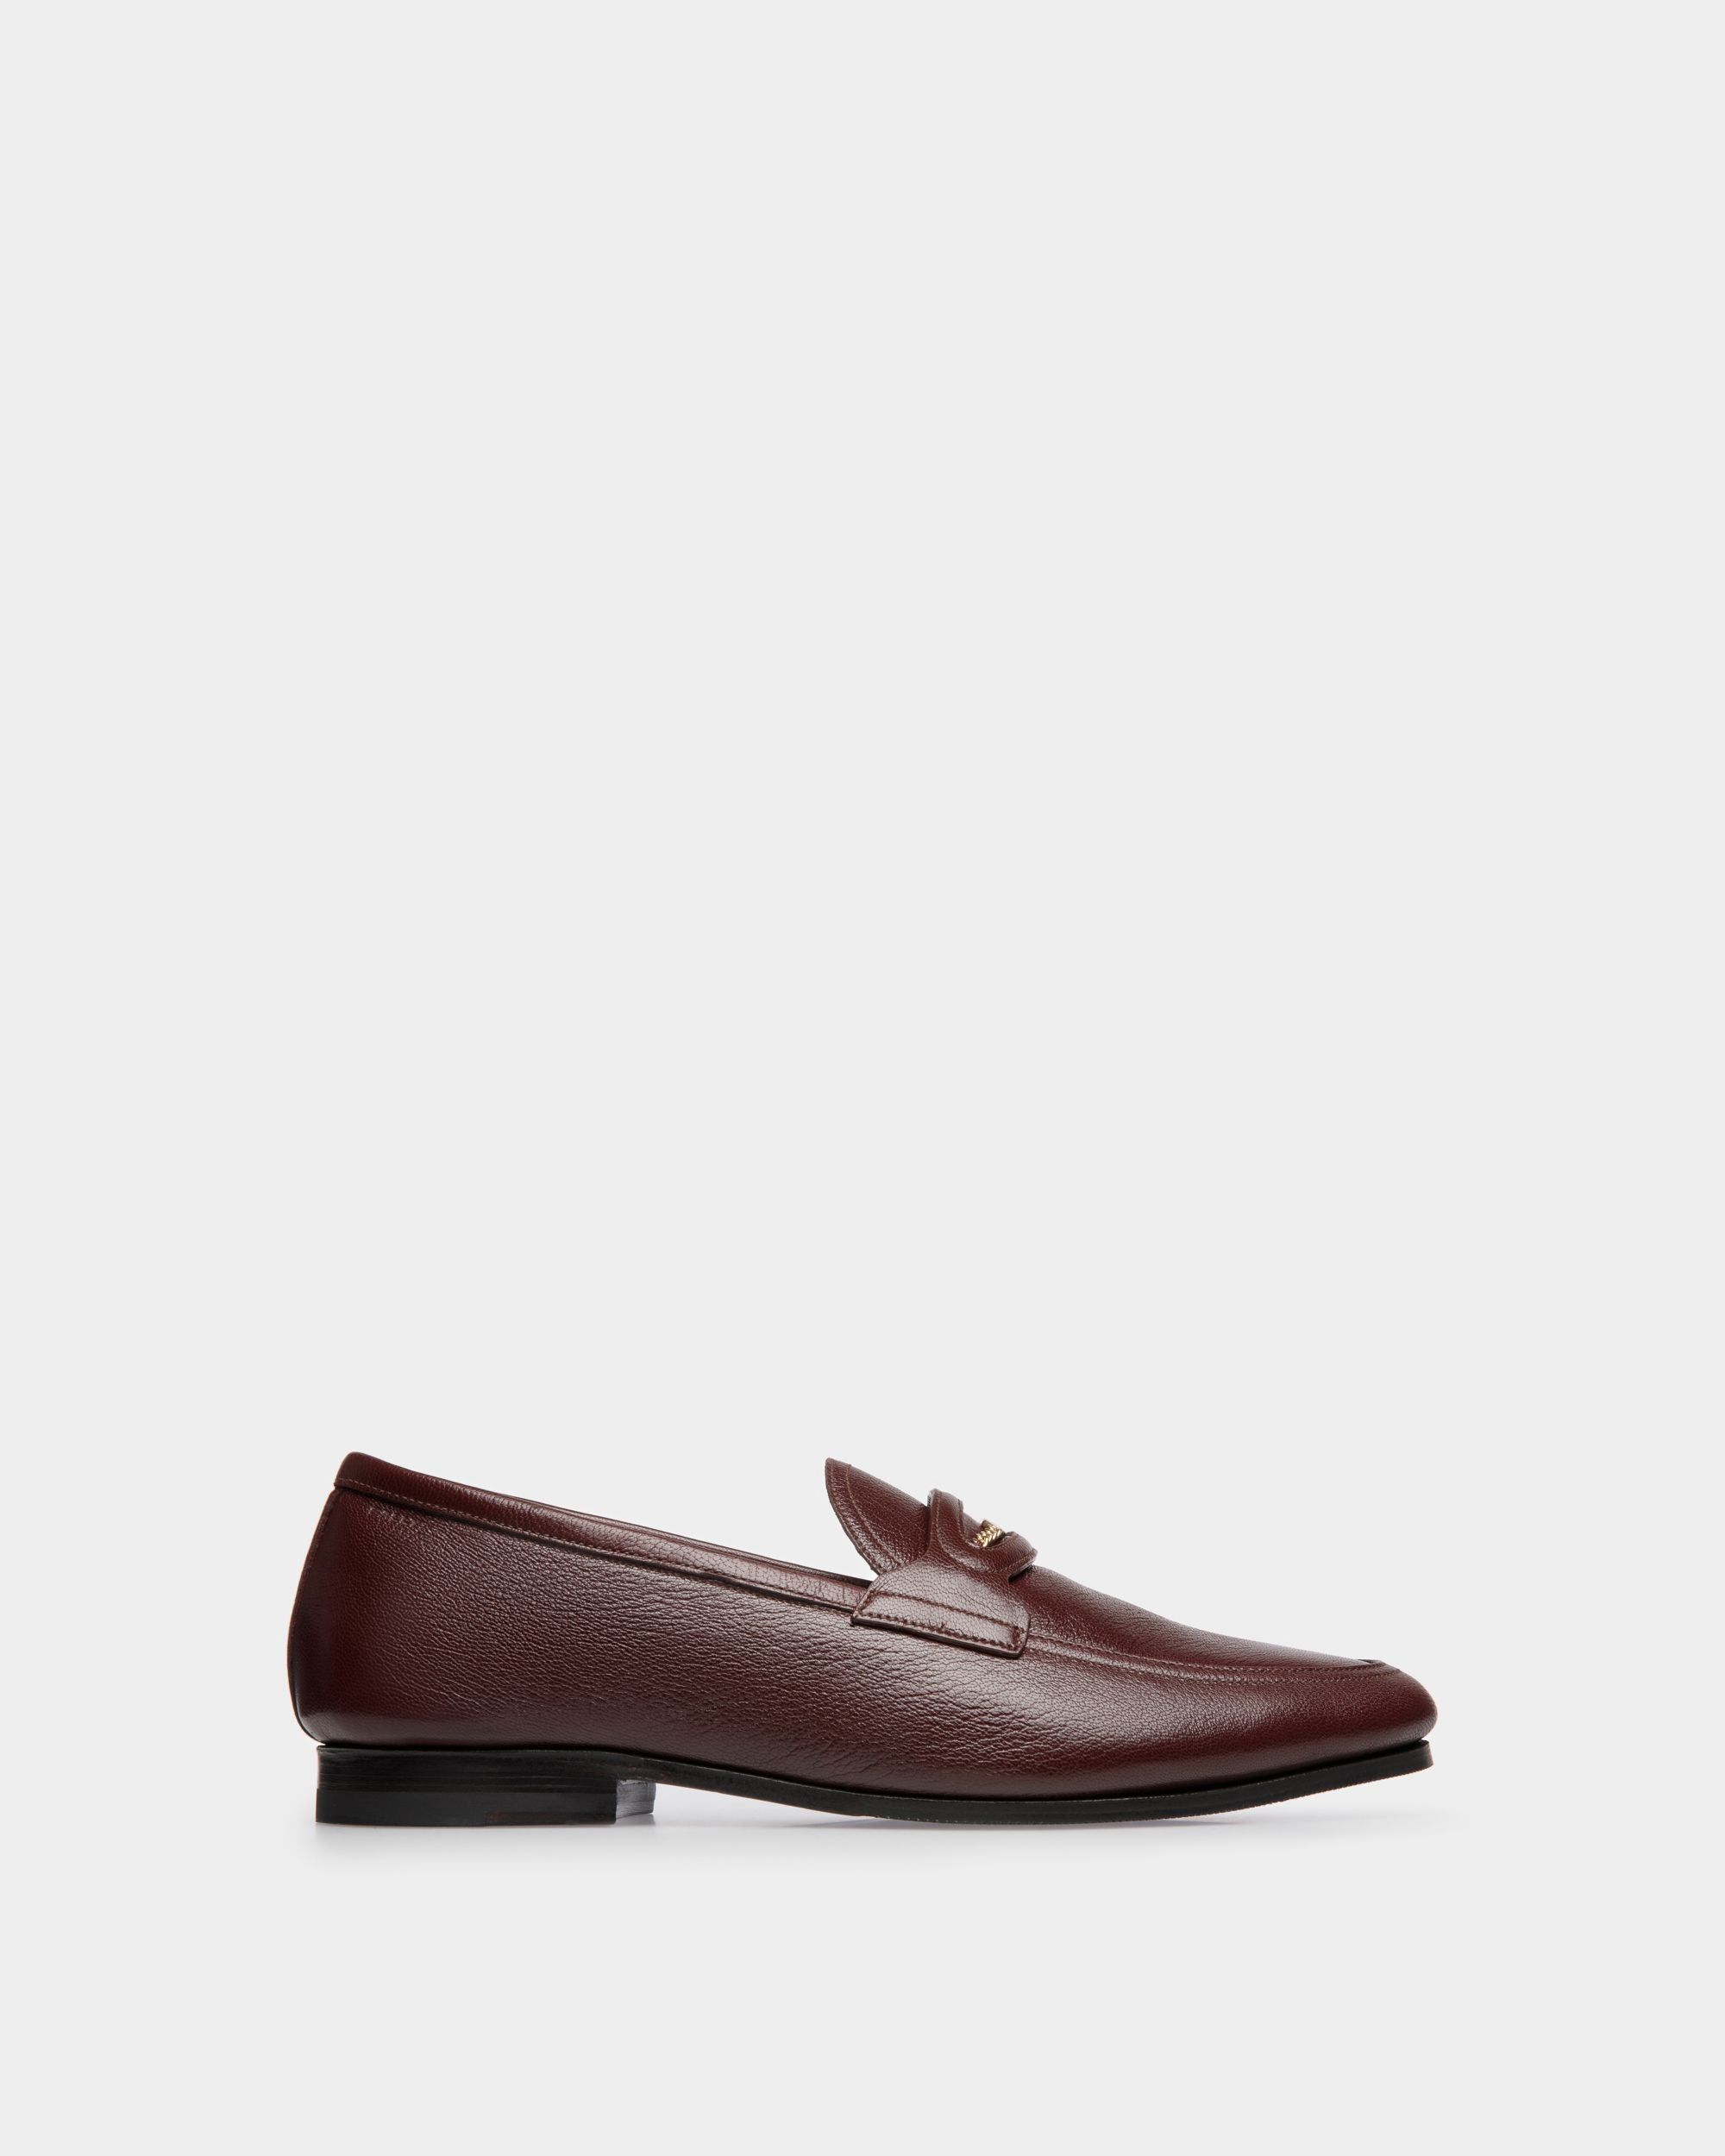 Plume | Loafer für Herren aus genarbtem Leder in Kastanienbraun | Bally | Still Life Seite